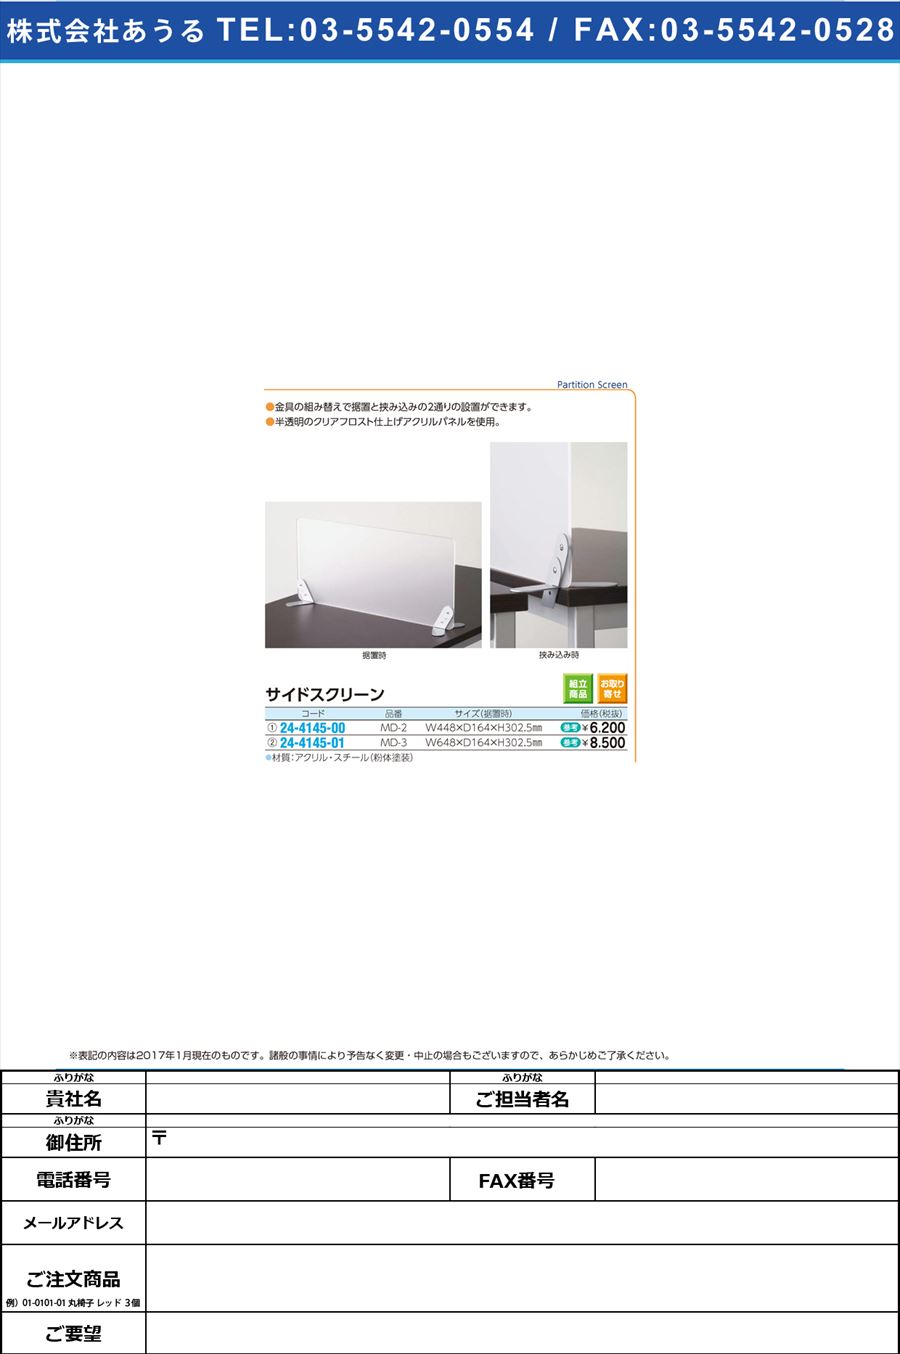 サイドスクリーン ｻｲﾄﾞｽｸﾘｰﾝ MD-2(W450)(24-4145-00)【1台単位】【2017年カタログ商品】